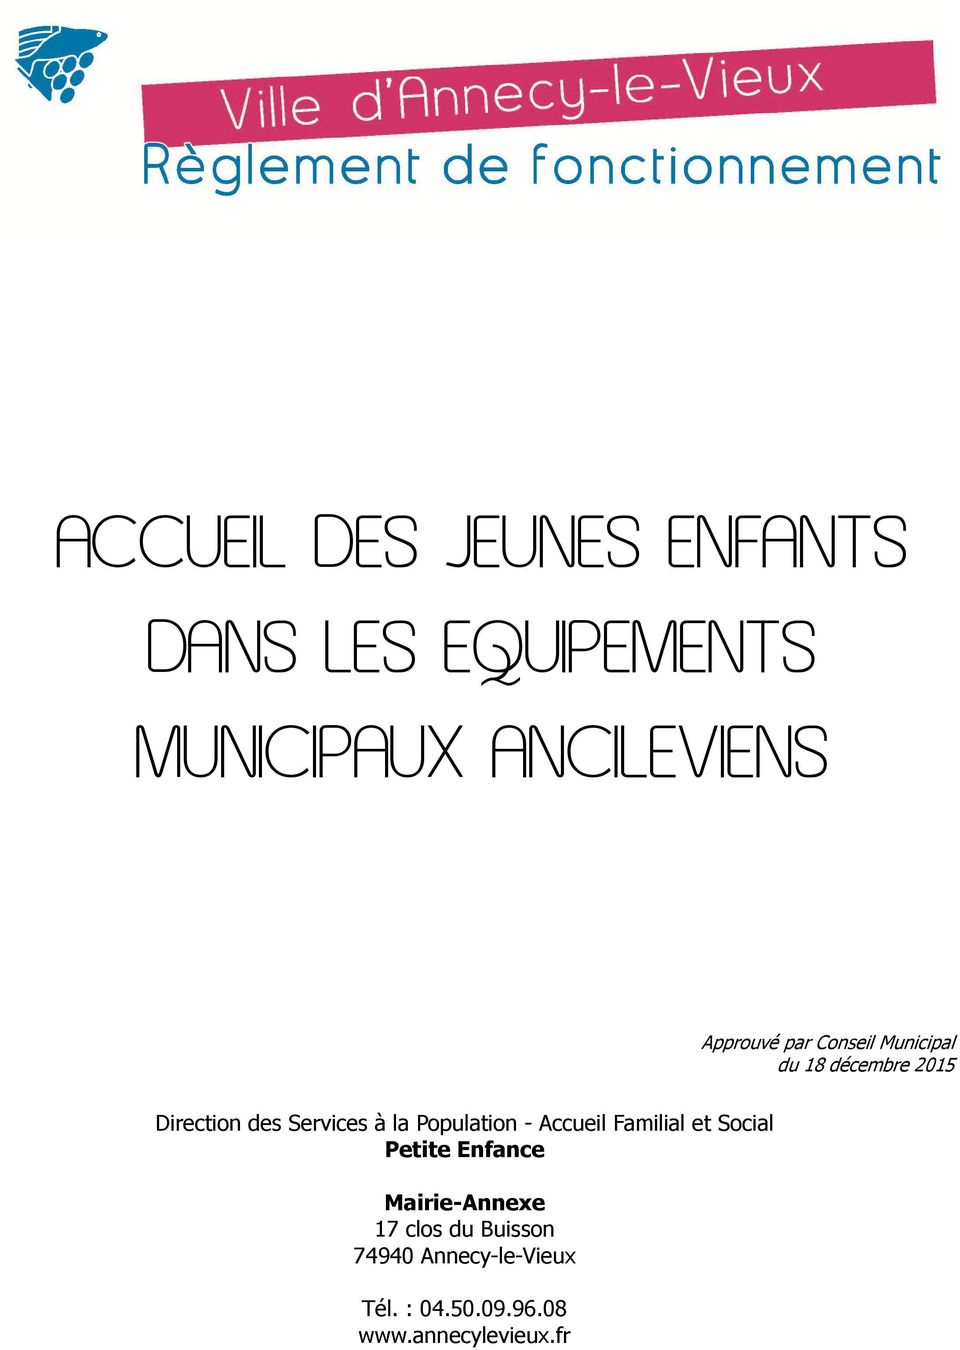 la Population - Accueil Familial et Social Petite Enfance Mairie-Annexe 17